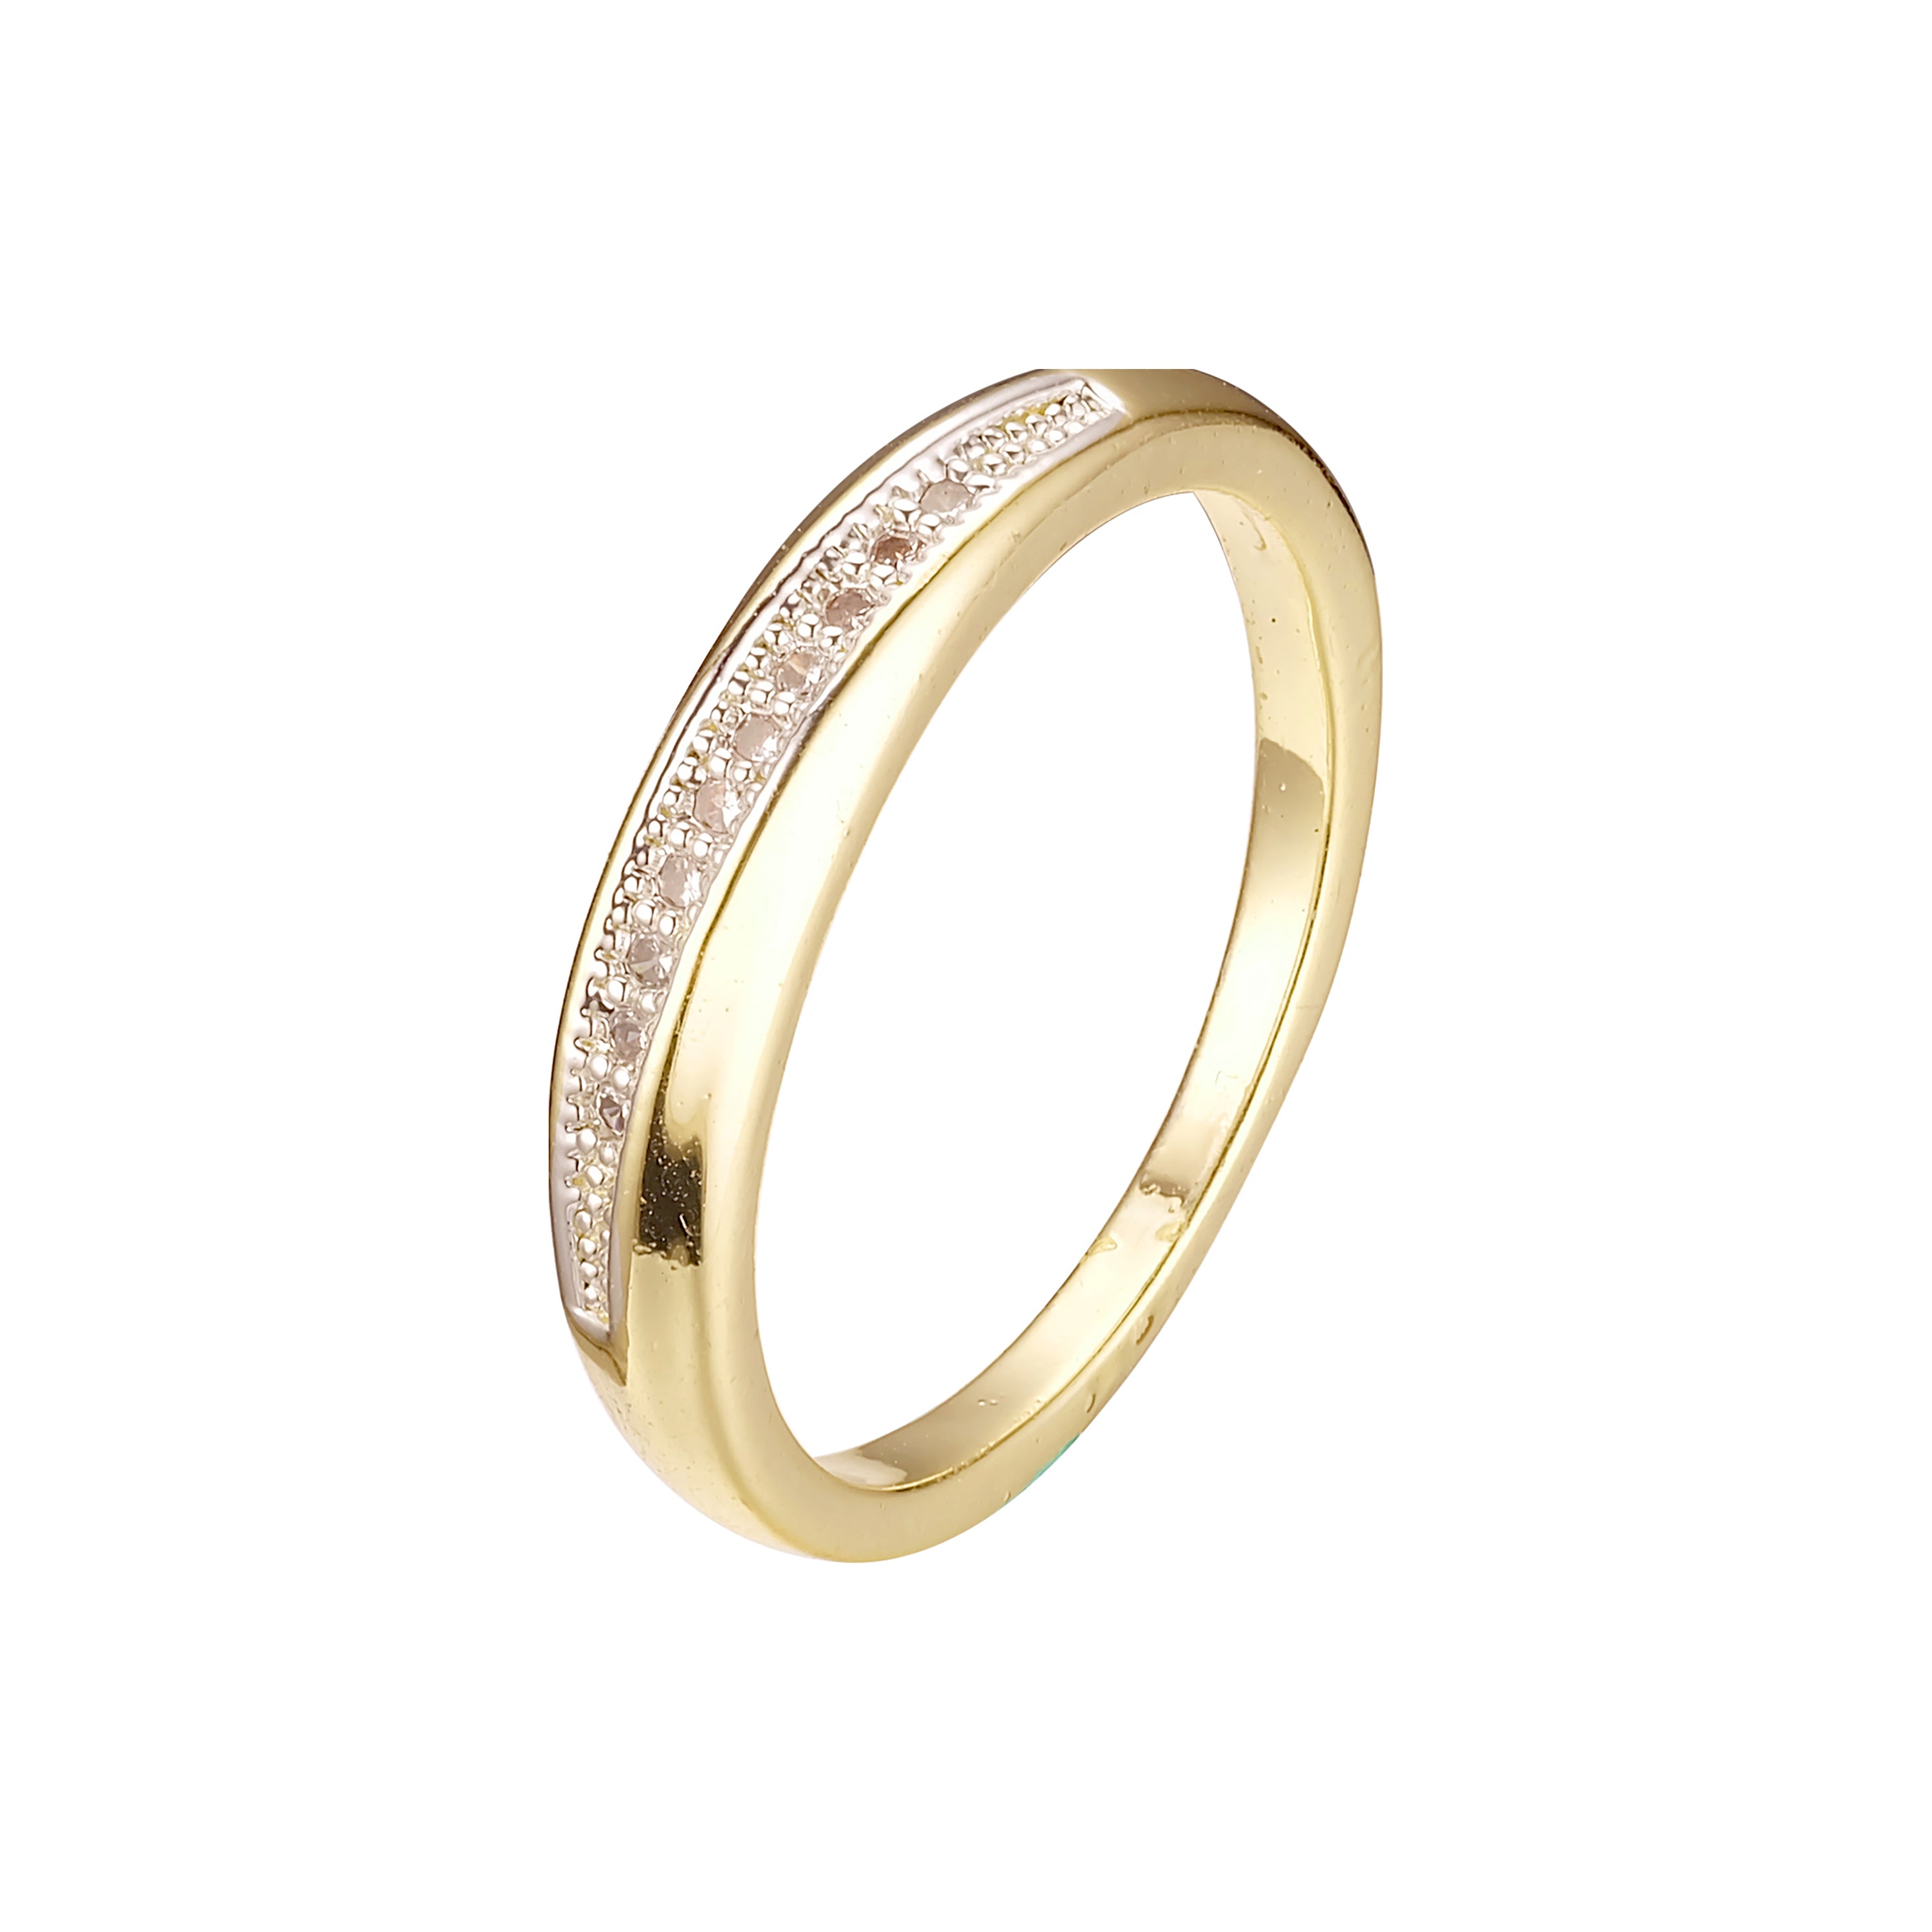 14K ゴールド、ローズゴールドメッキ色の結婚指輪リング